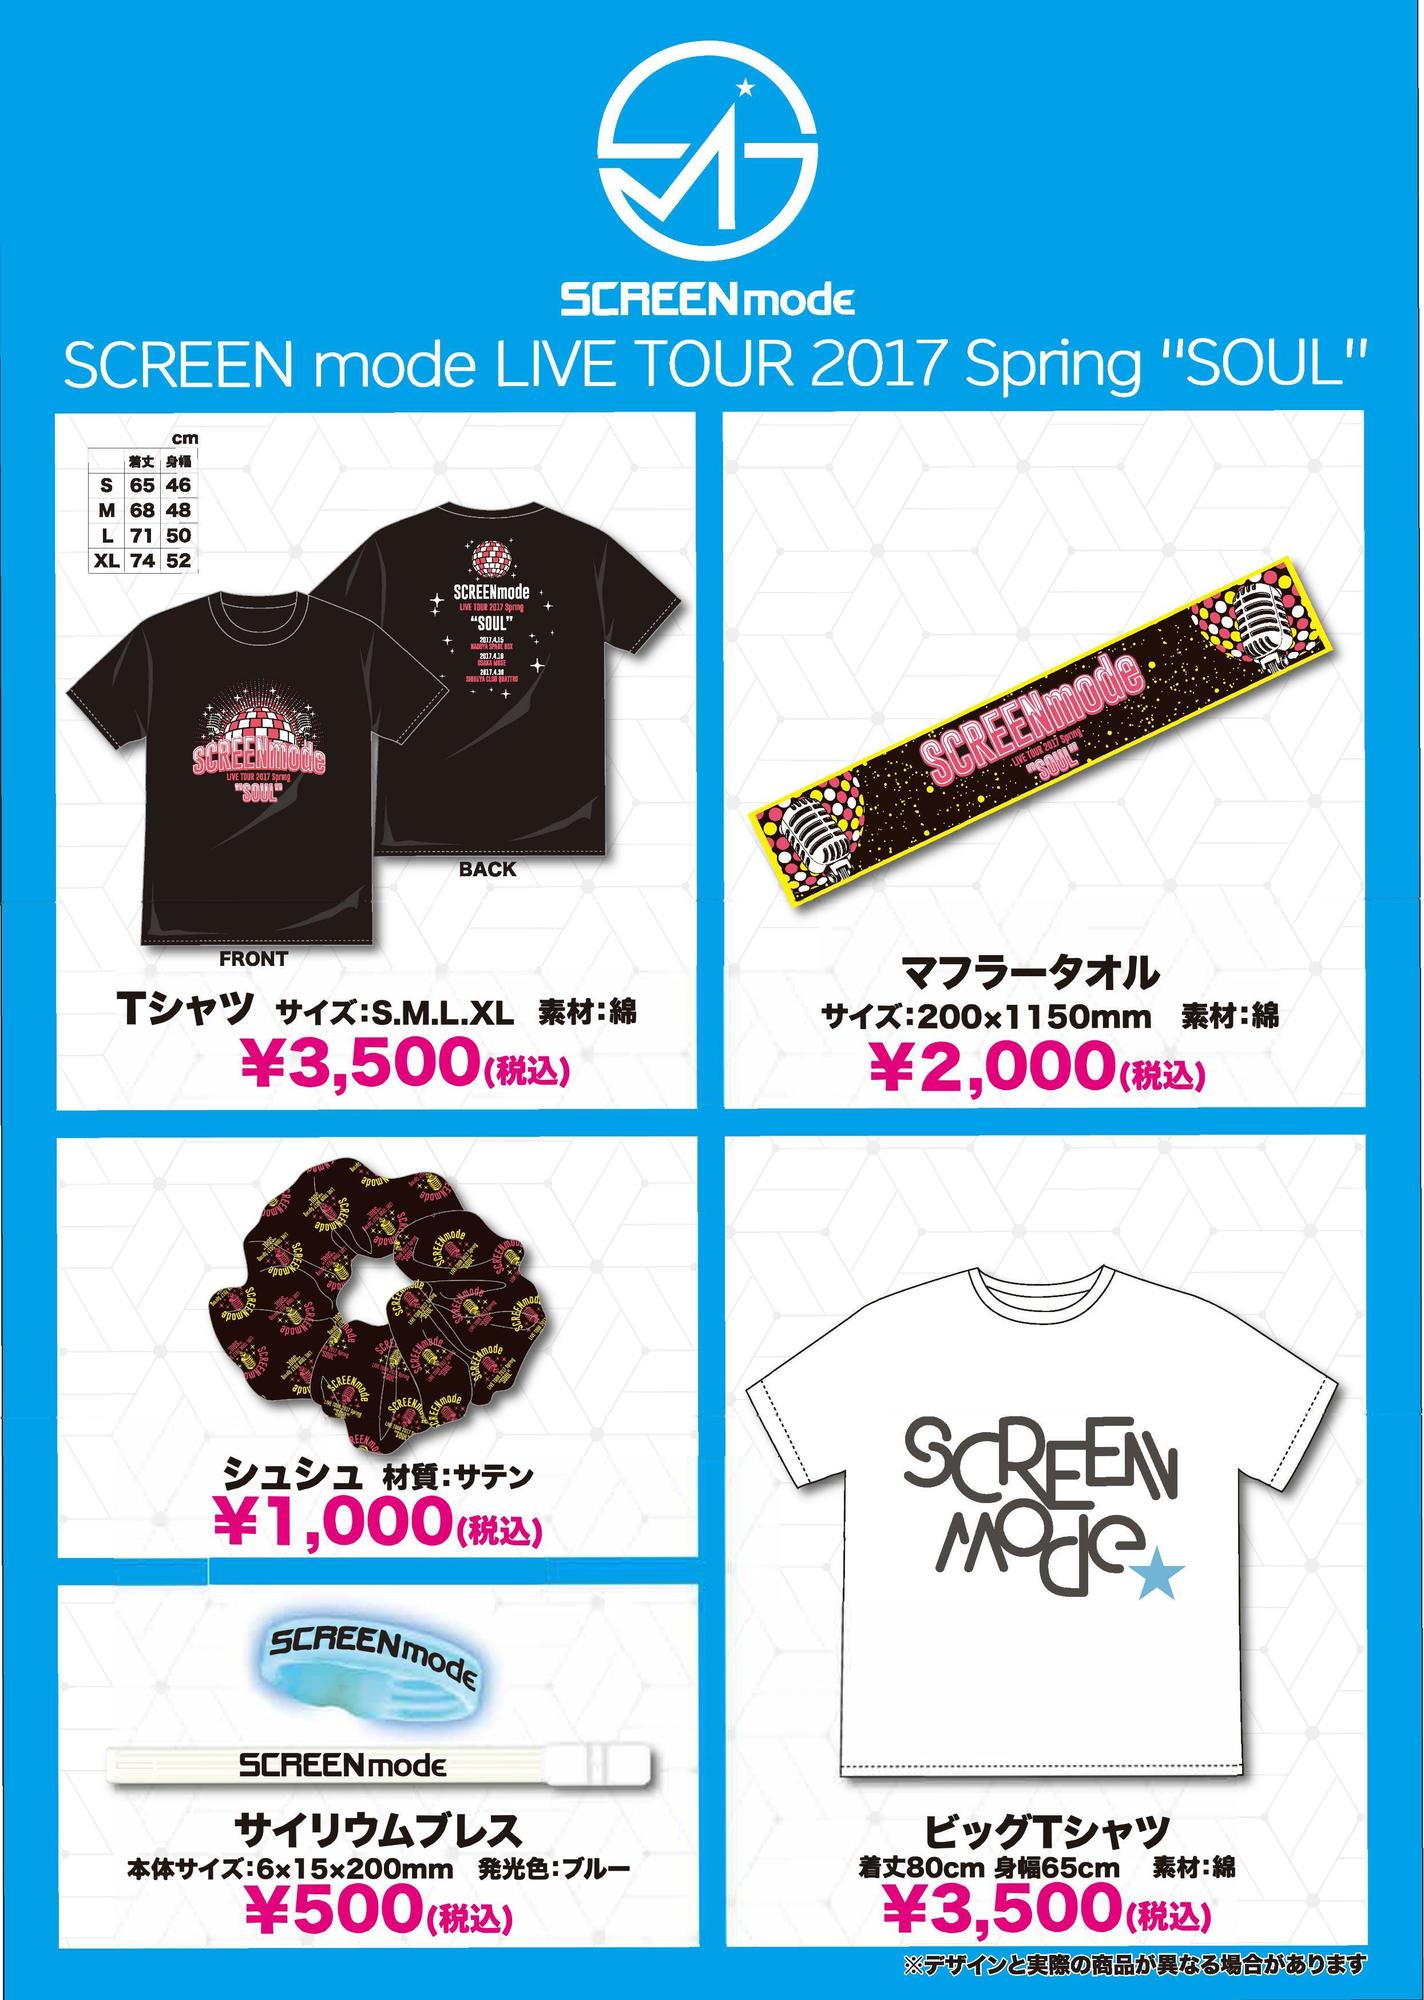 SCREEN mode LIVE TOUR 2017 Spring “SOUL” グッズラインナップ公開 